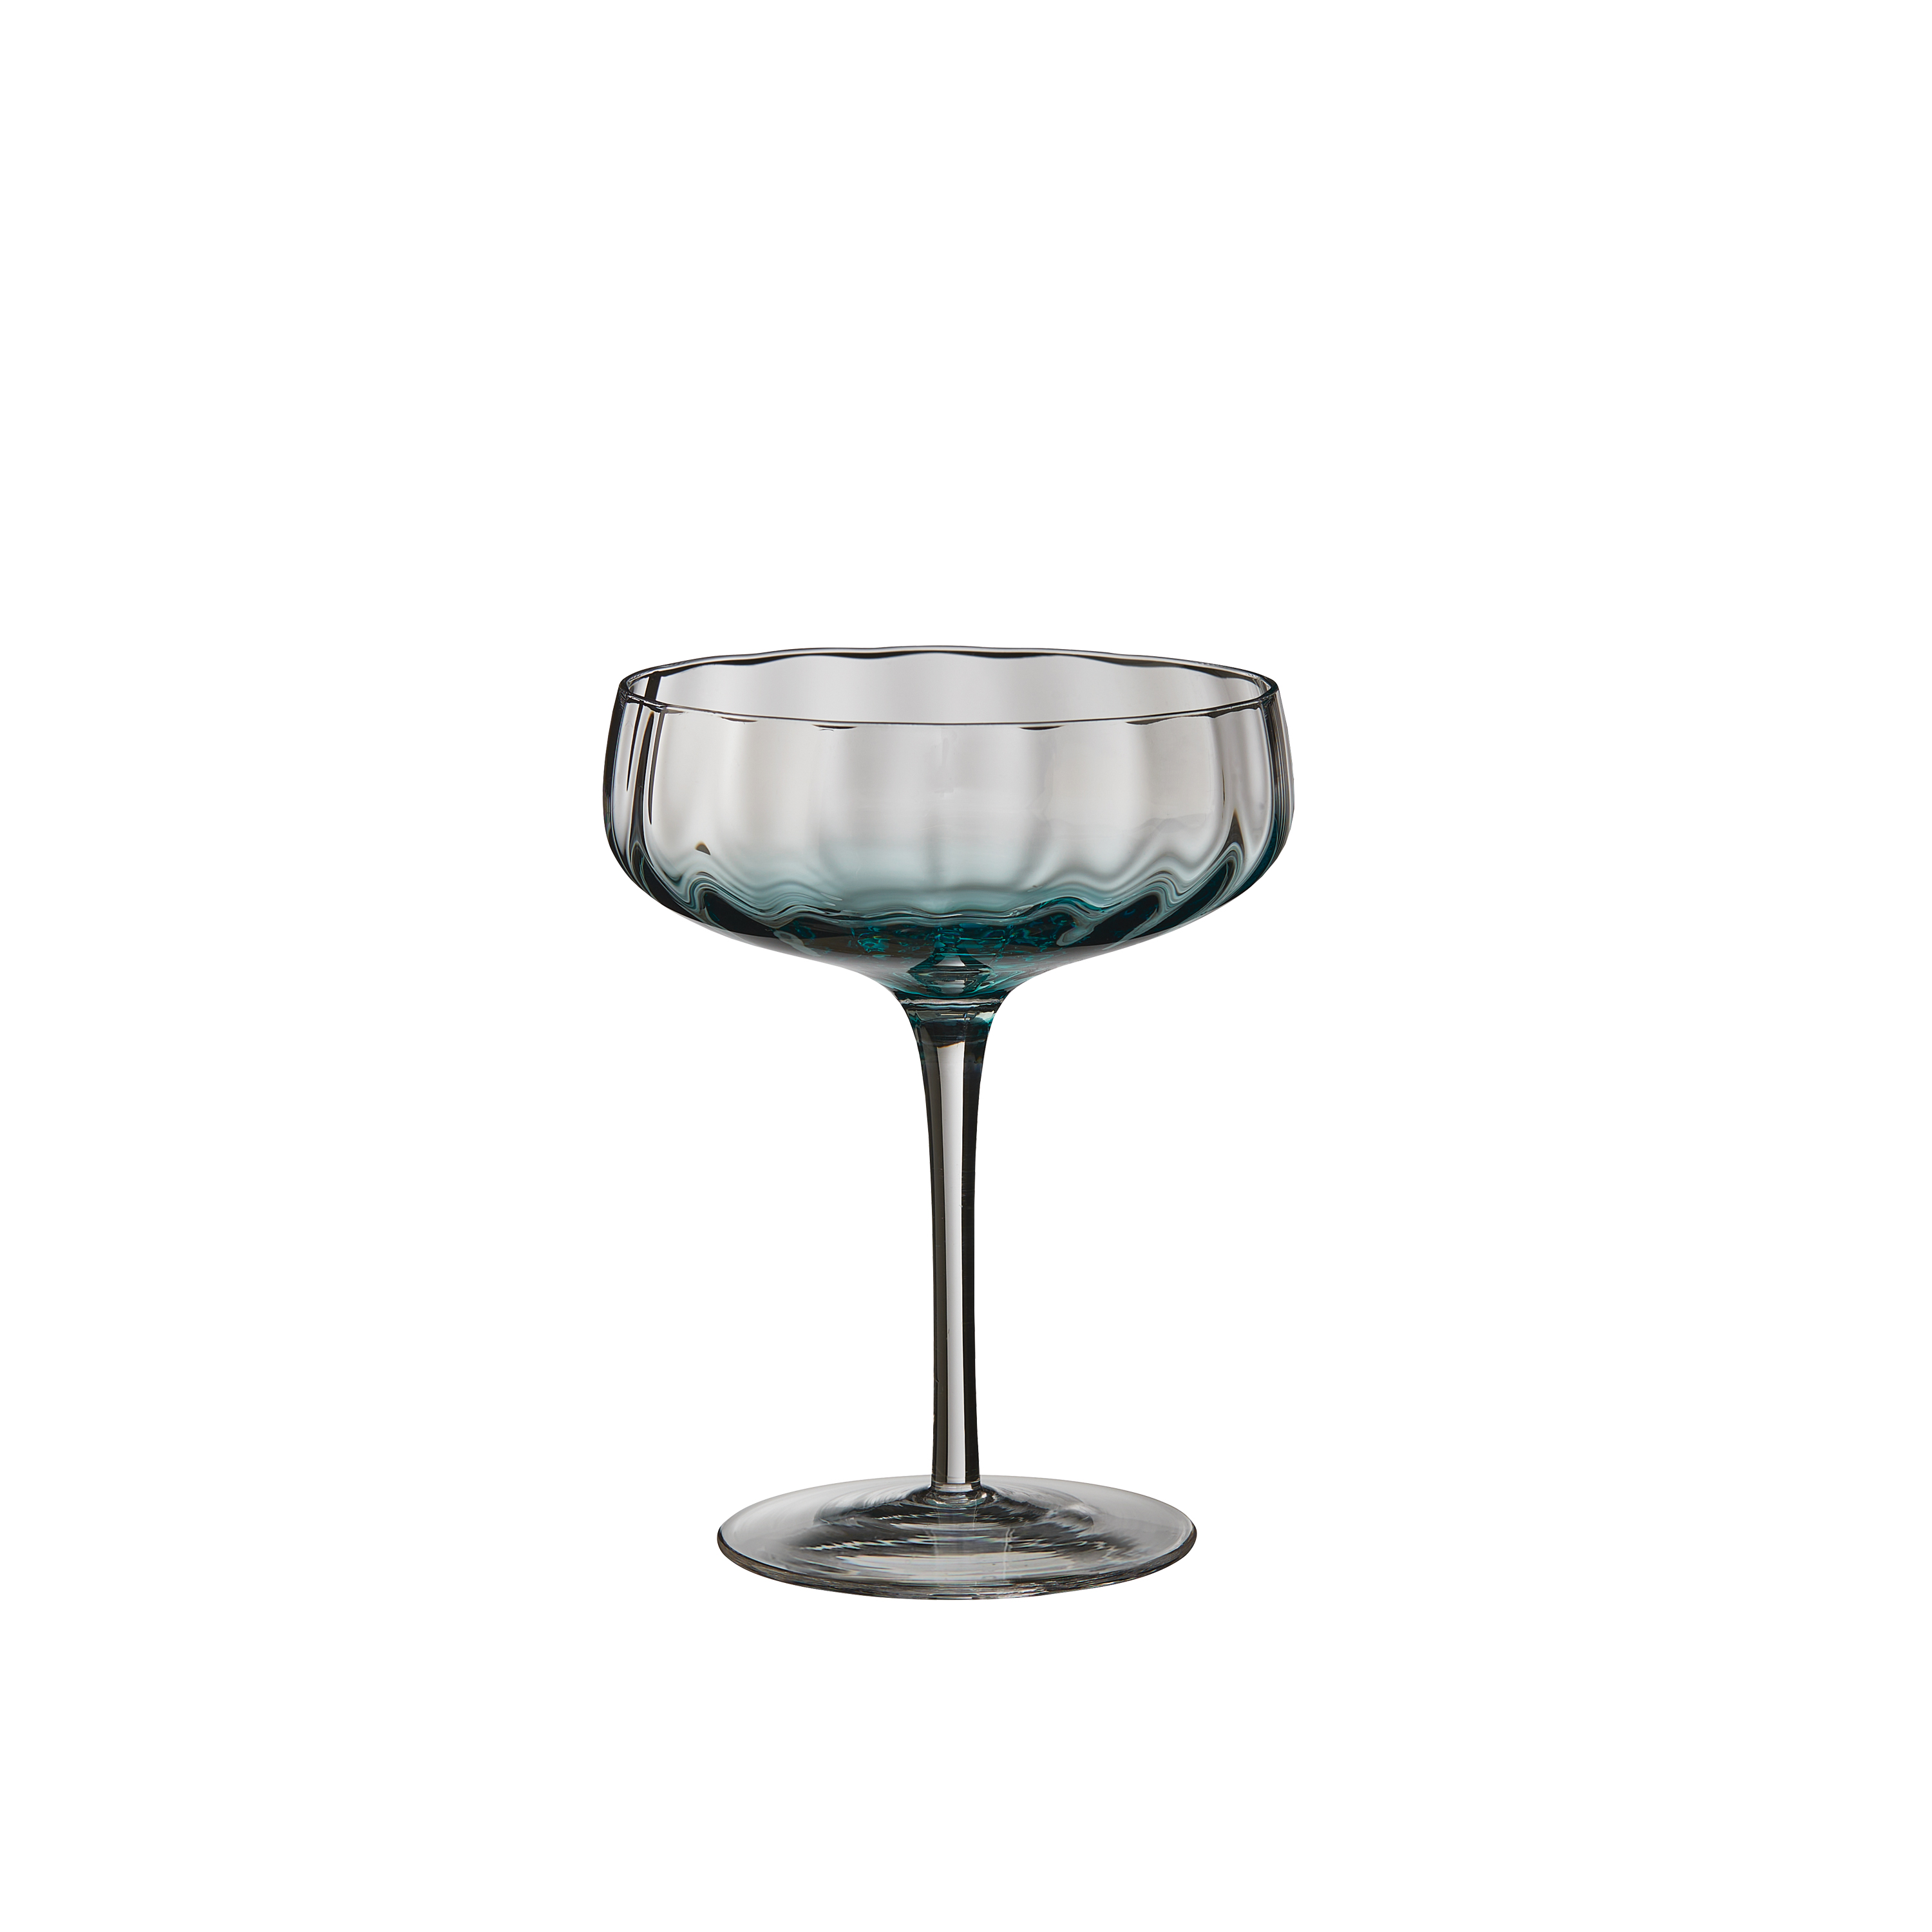 SØHOLM Sonja - champagne/cocktail glas 30 cl, petroleumsblå 